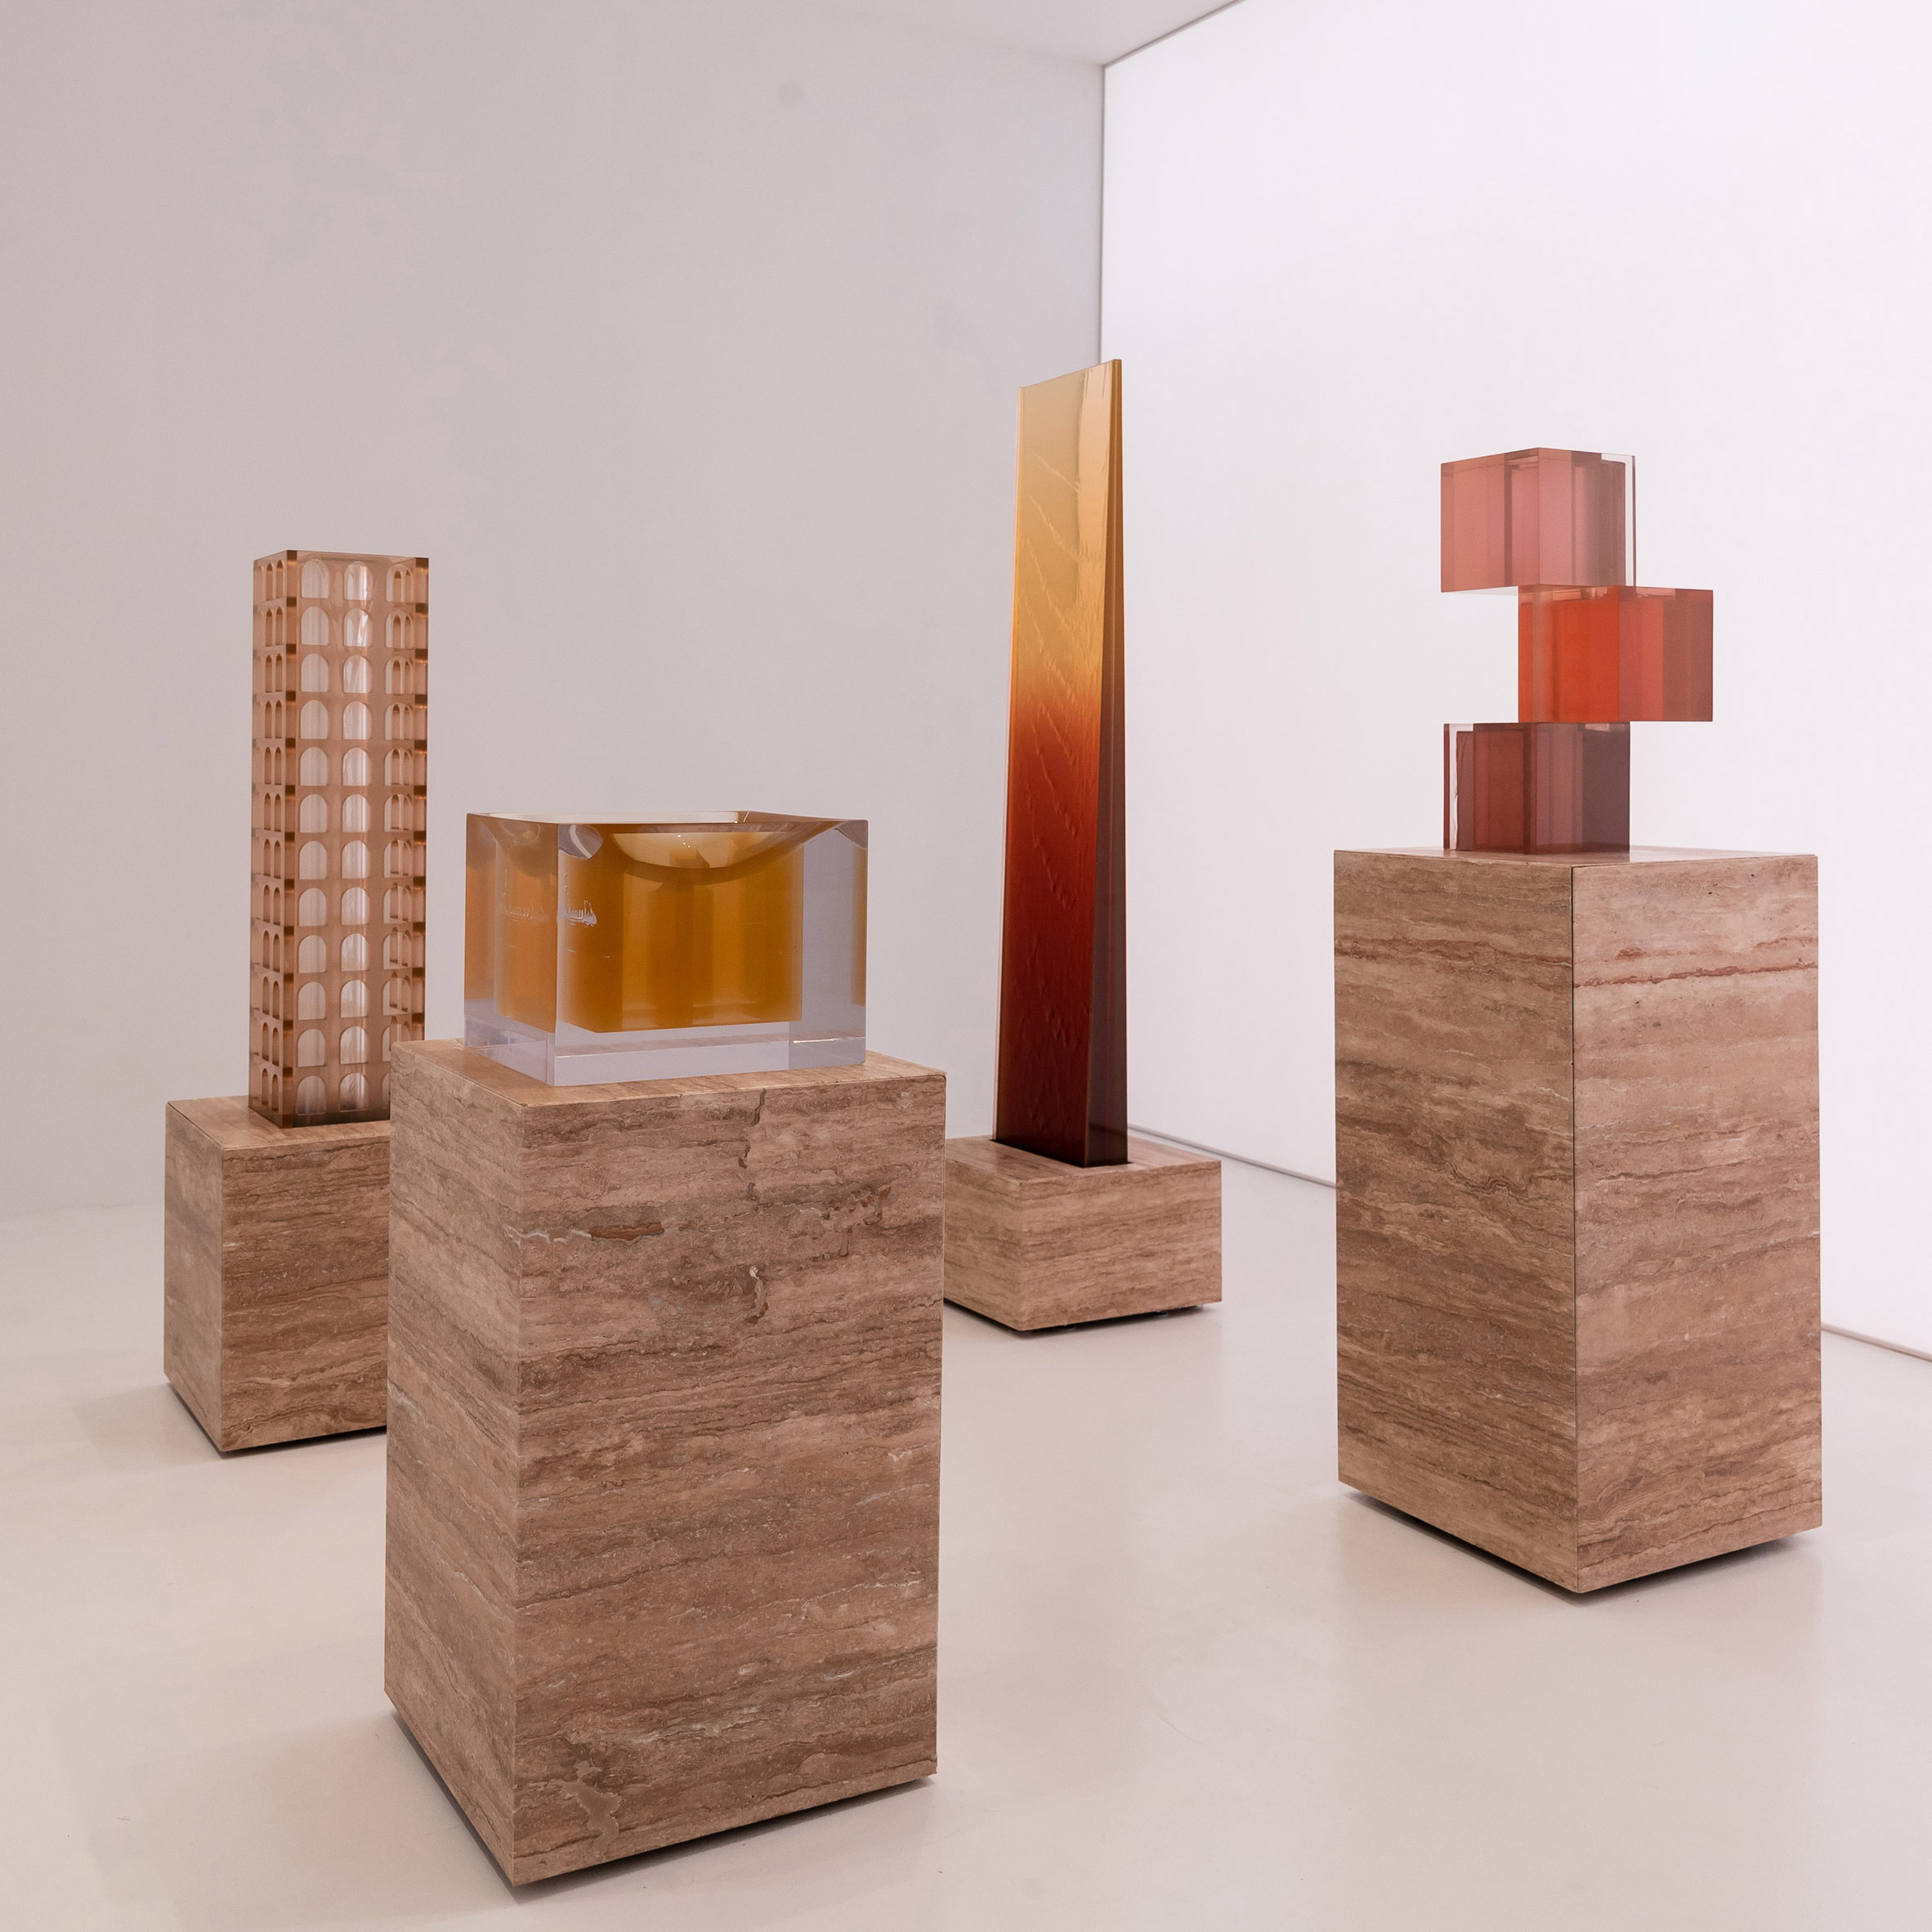 Sabine Marcelis installs at Design Miami